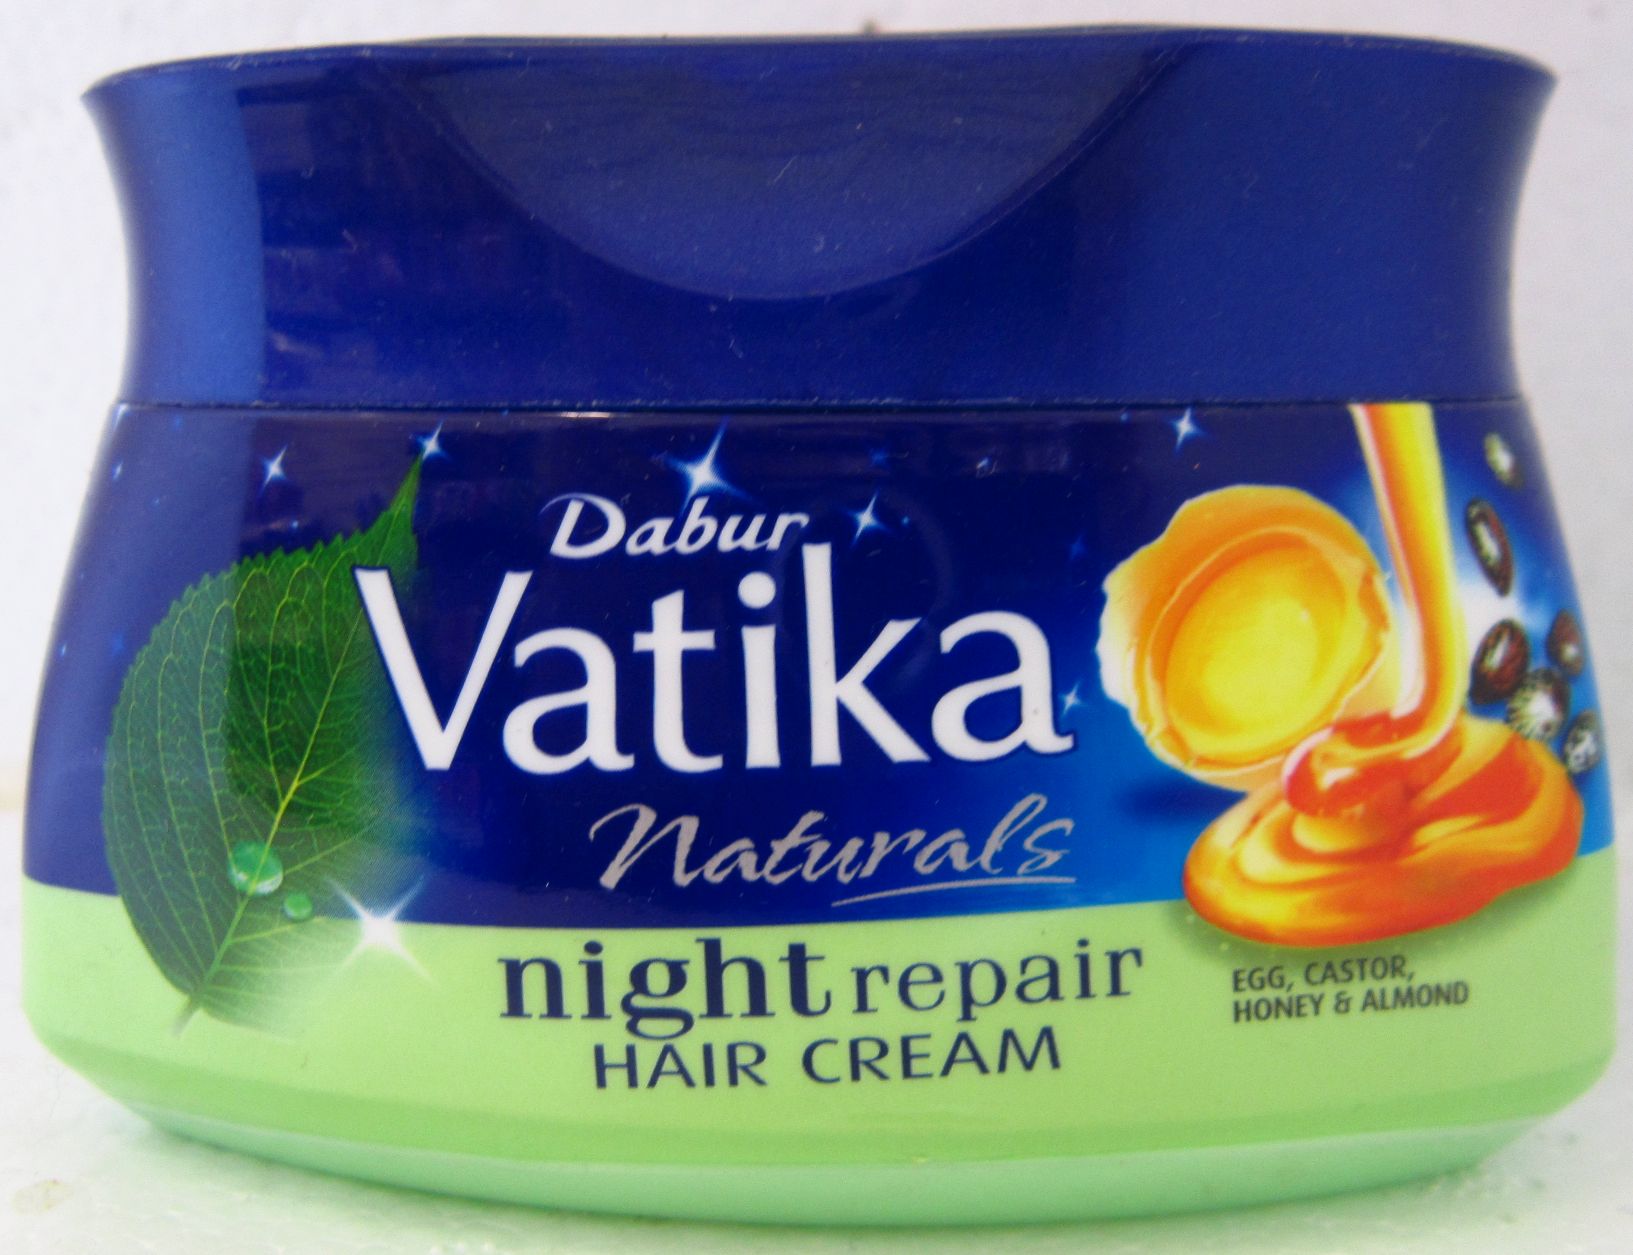 Dabur Vatika Night Repair Hair Cream Image